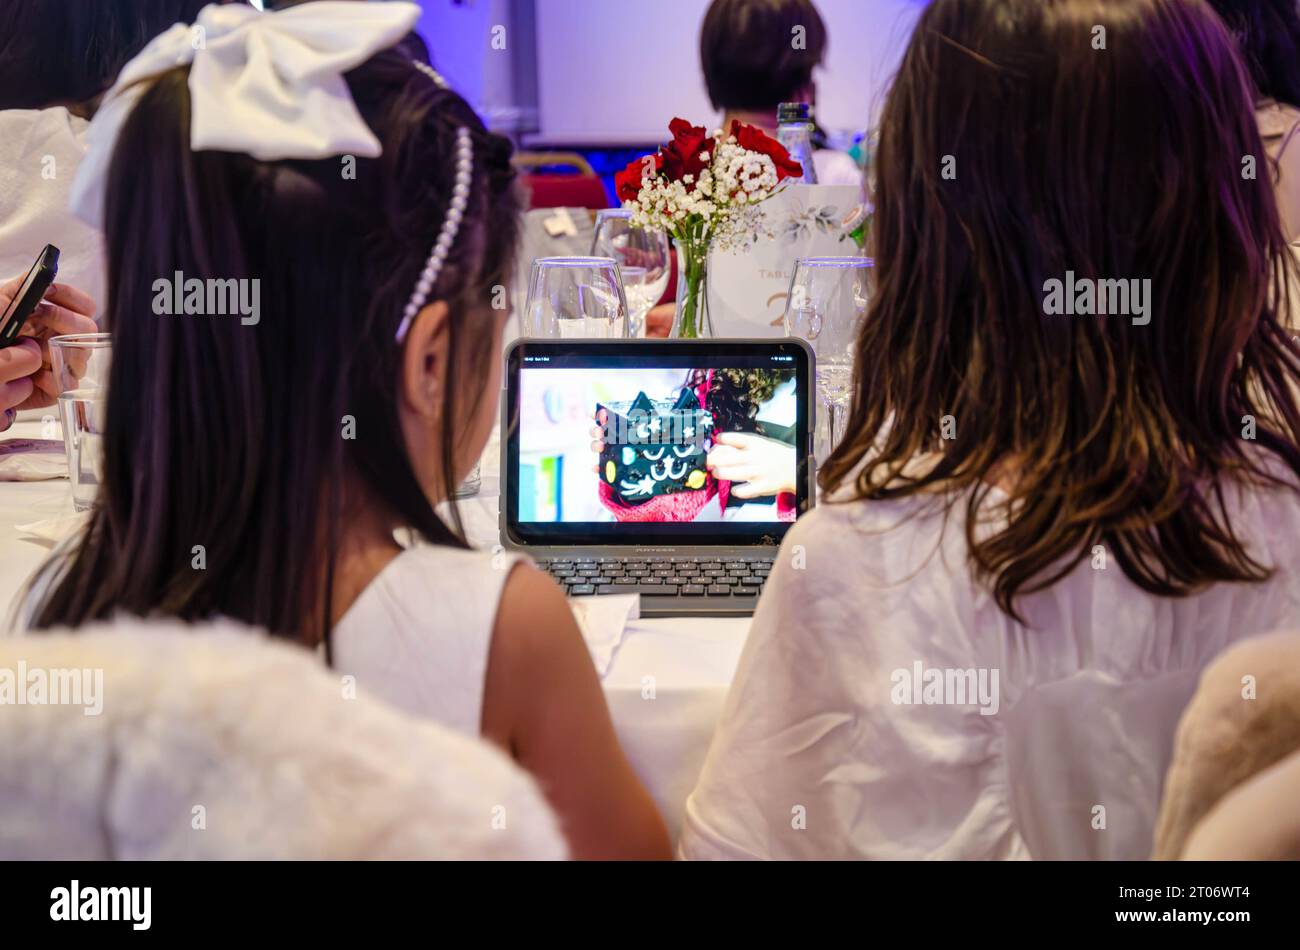 Ein paar junge Mädchen werden auf einer Party unterhalten und sehen fernsehsendungen auf einem kleinen Laptop-Tablet-Computer, der hinter ihm zu sehen ist Stockfoto